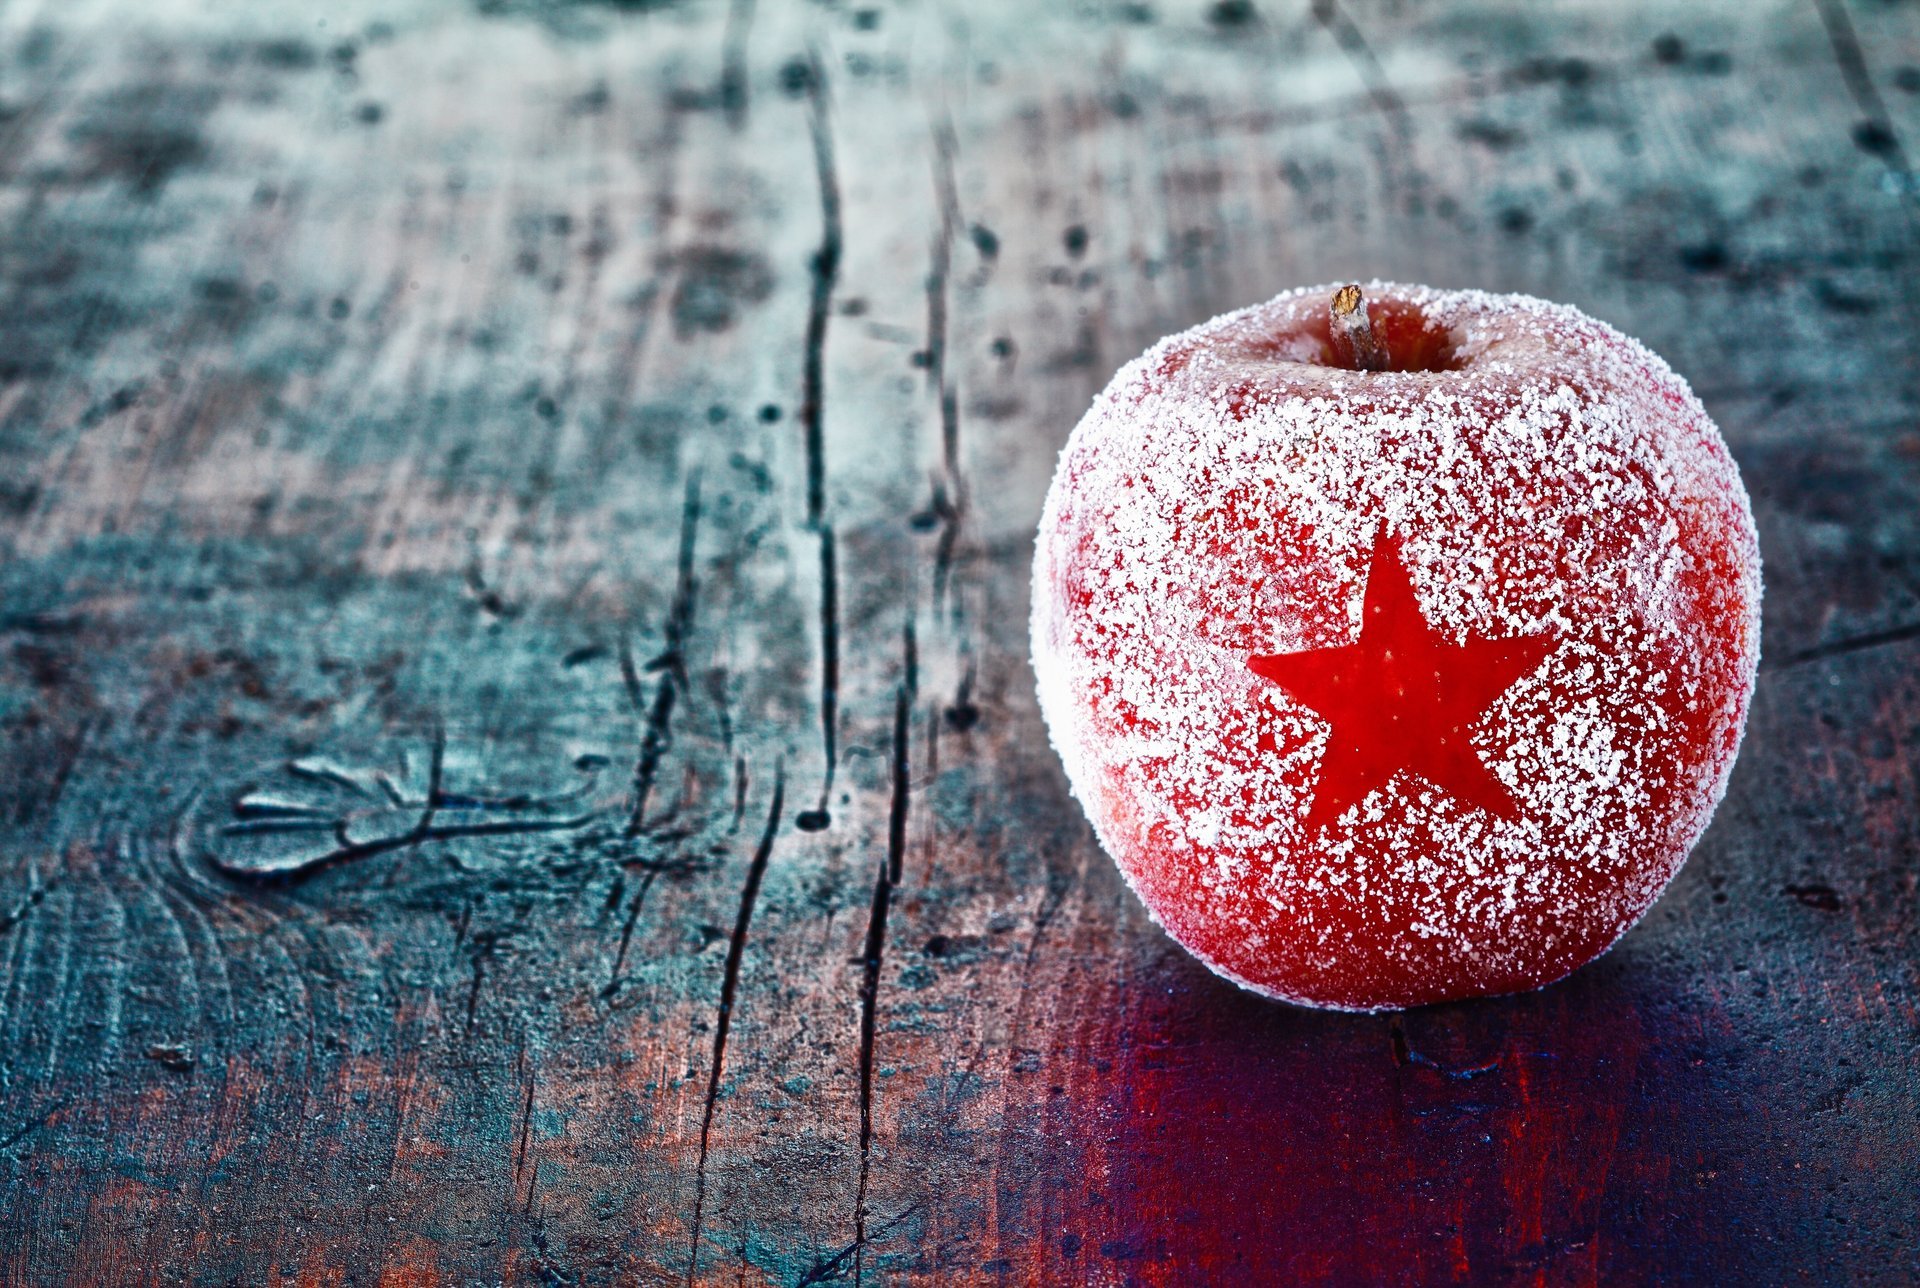 Праздничное украшение красное яблоко